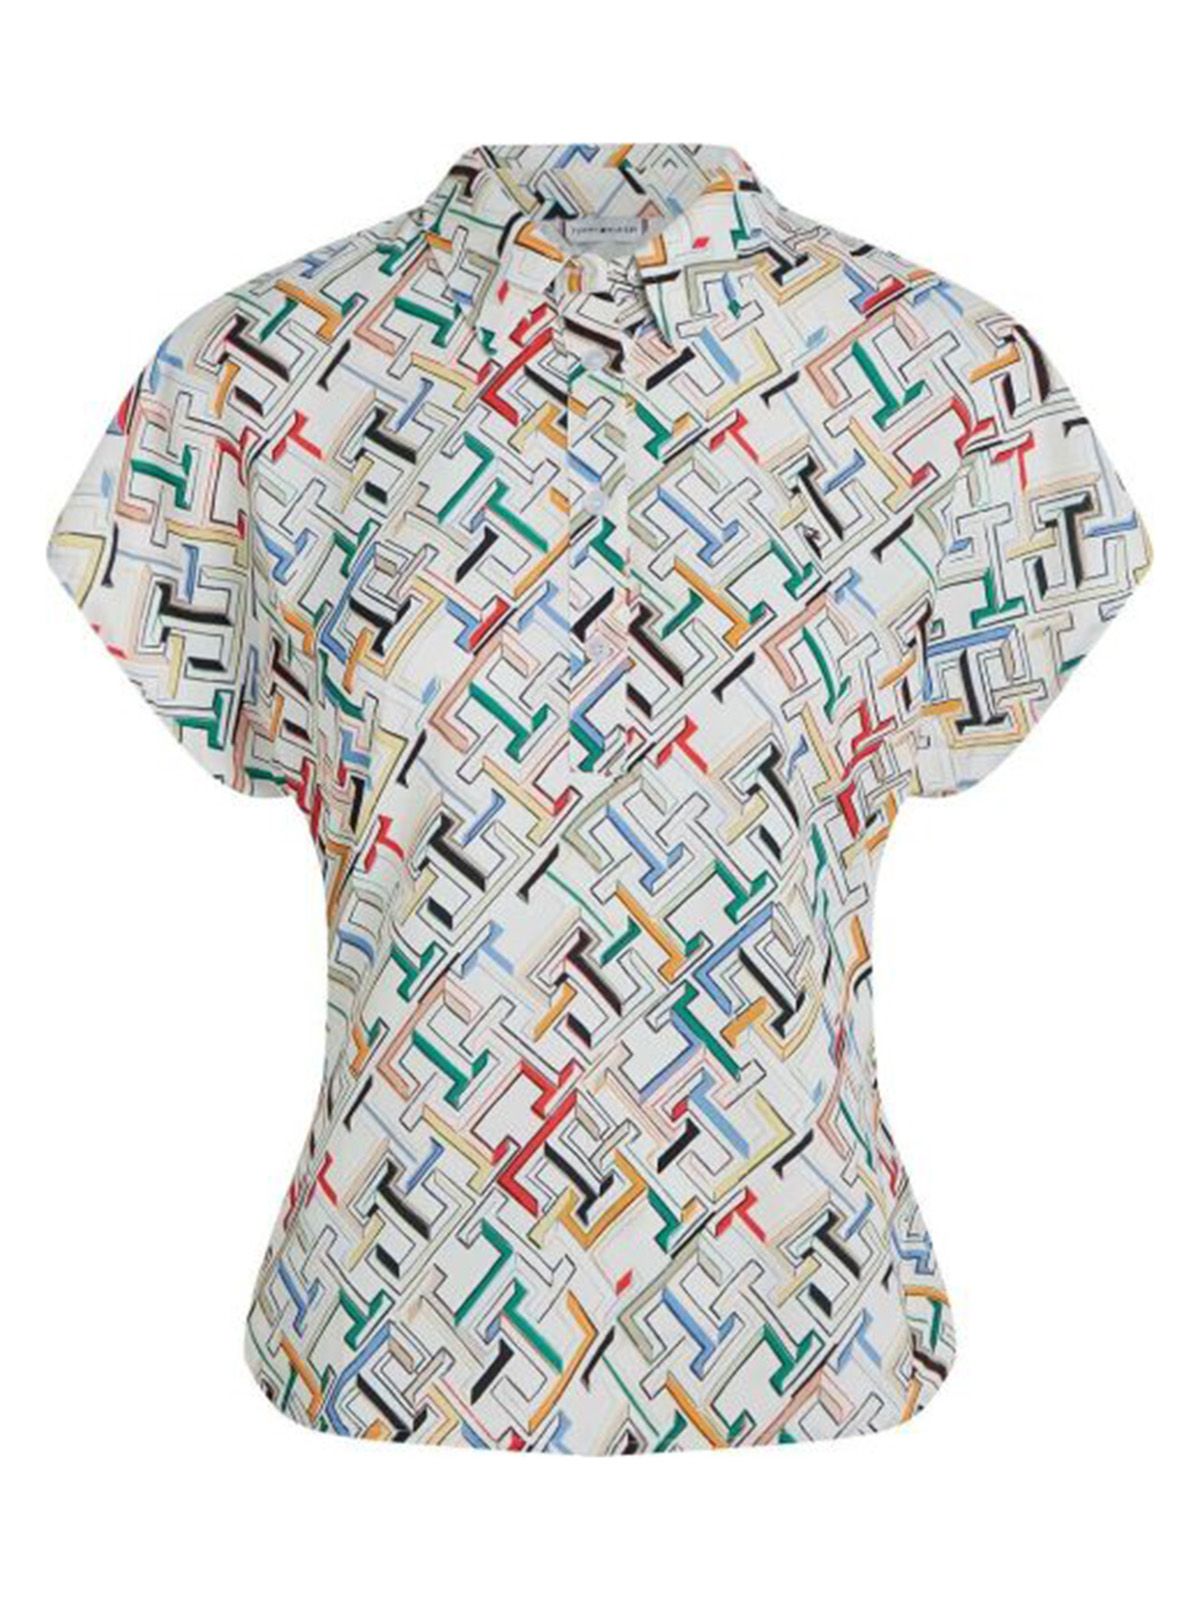 Bluse e camicie Donna Tommy Hilfiger - Amd Button Ss Top - Multicolore